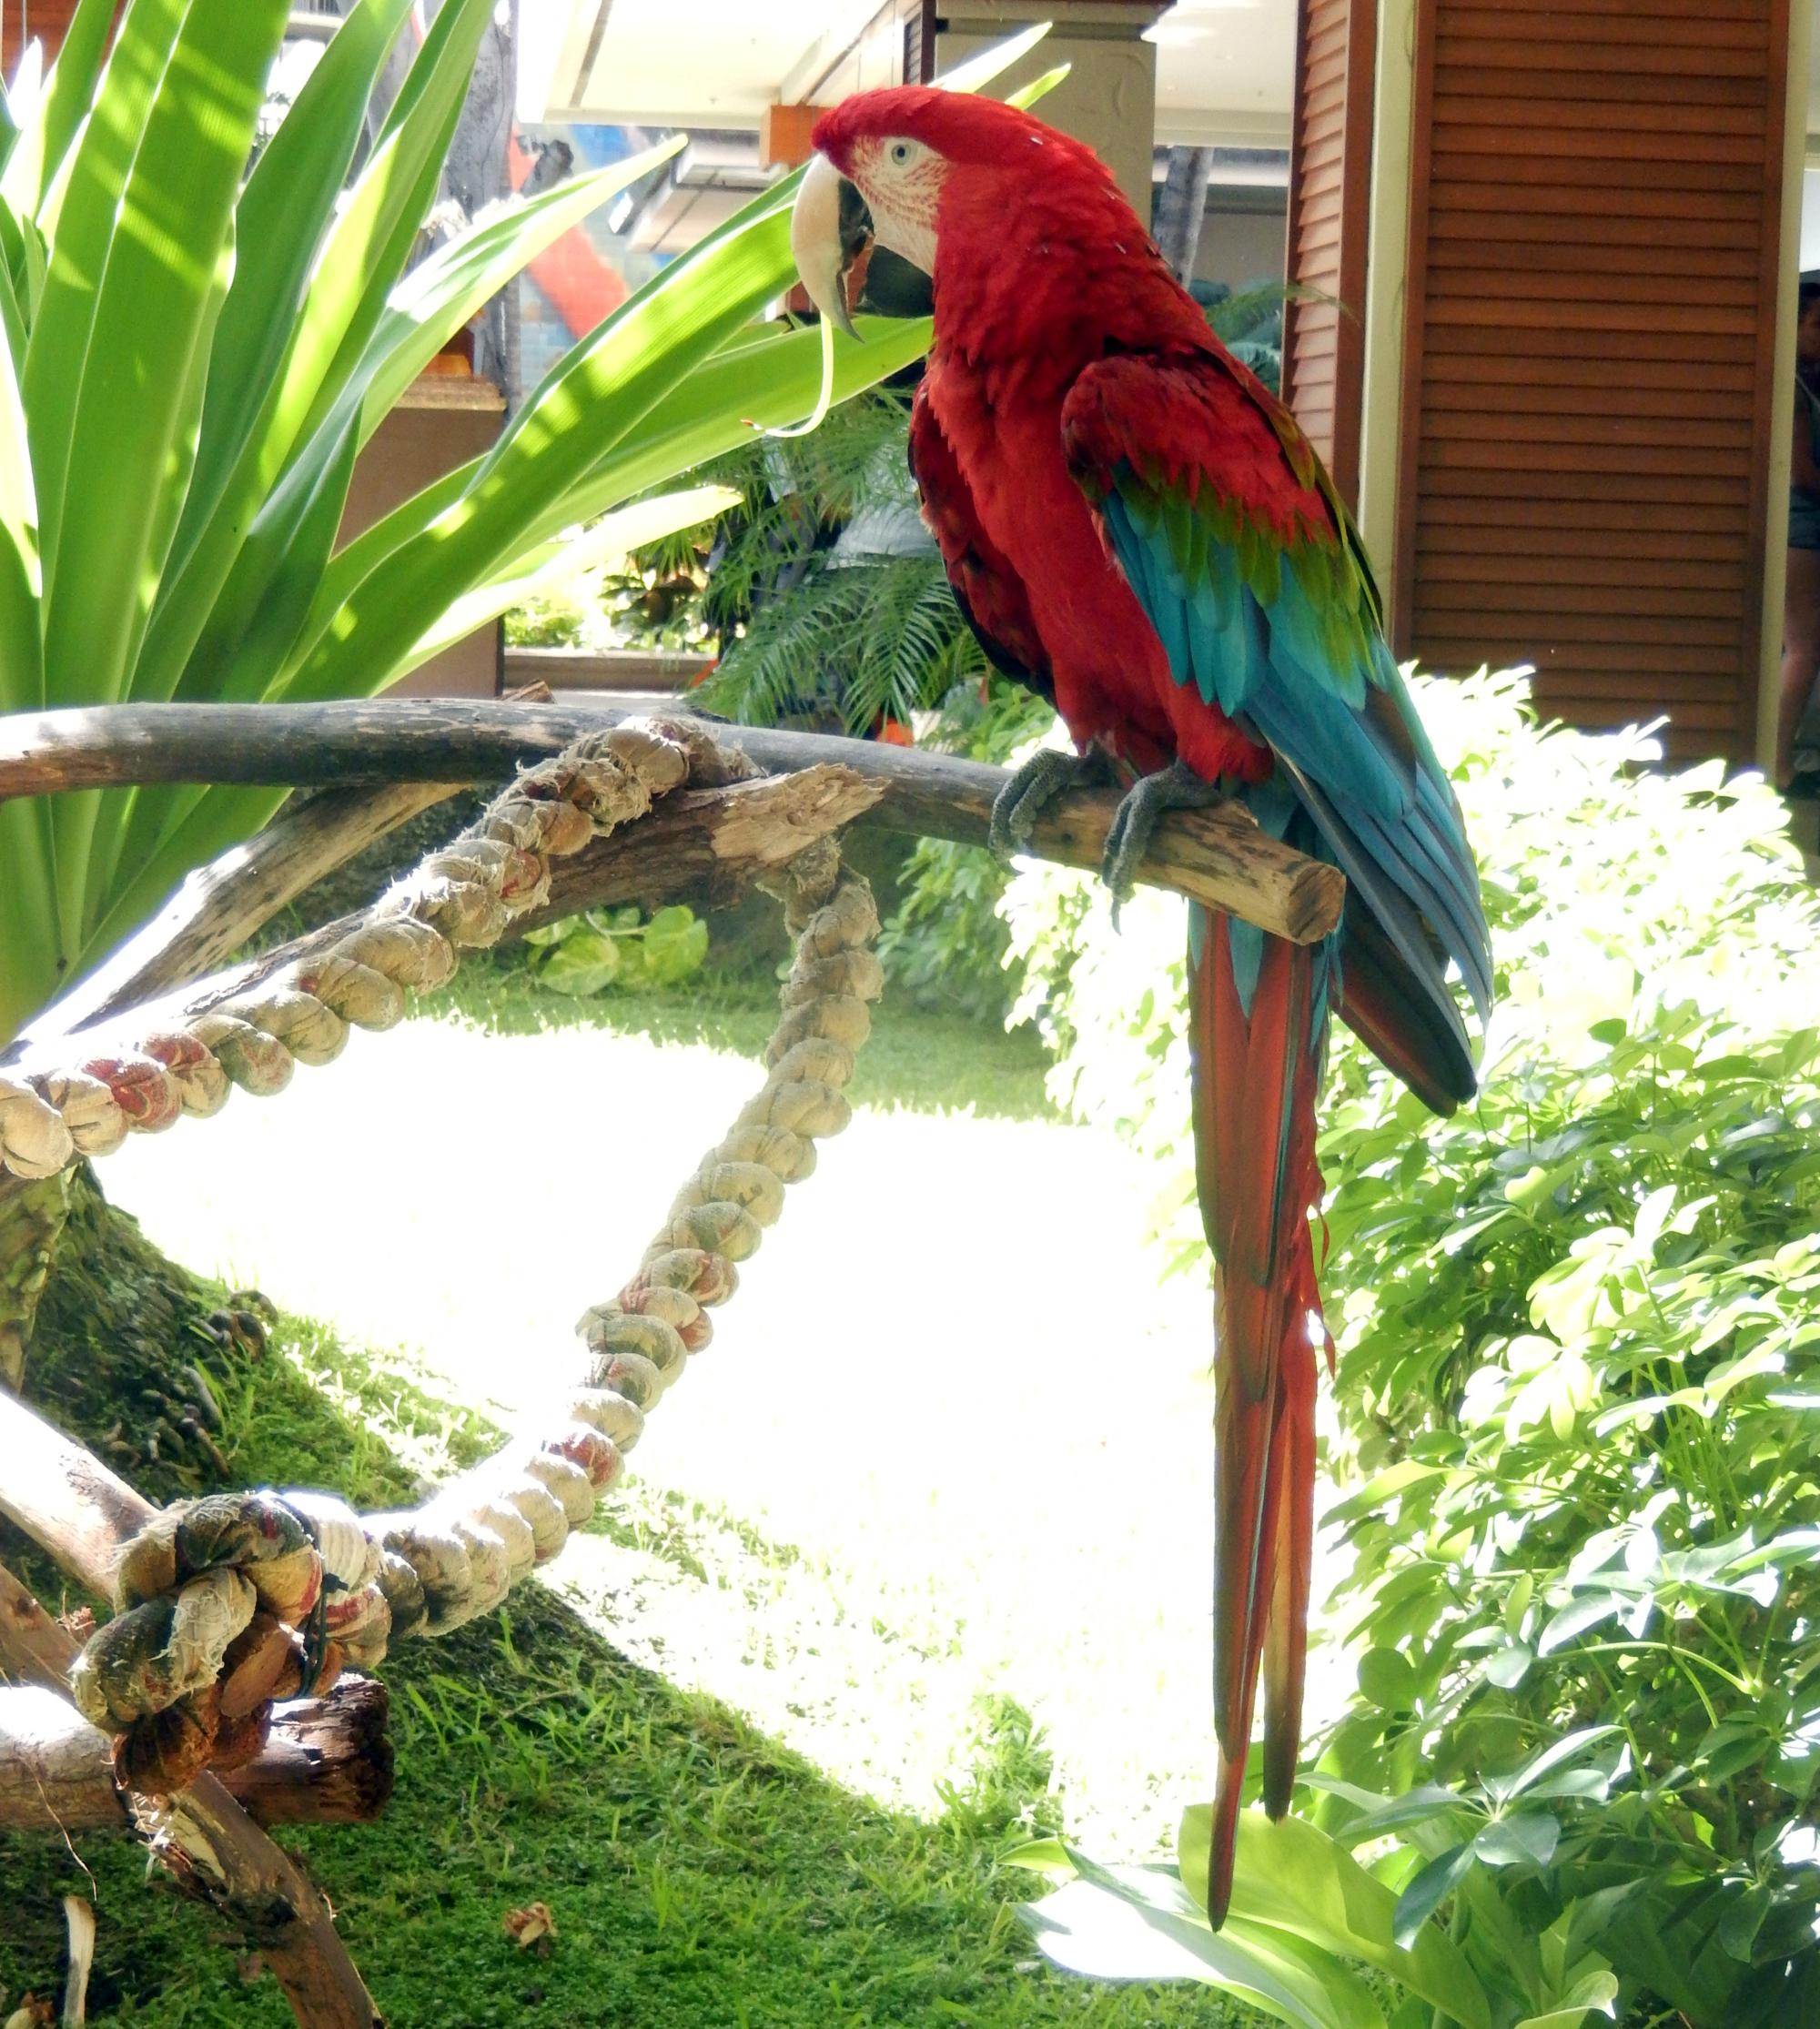 Hawaii - Parrot #2